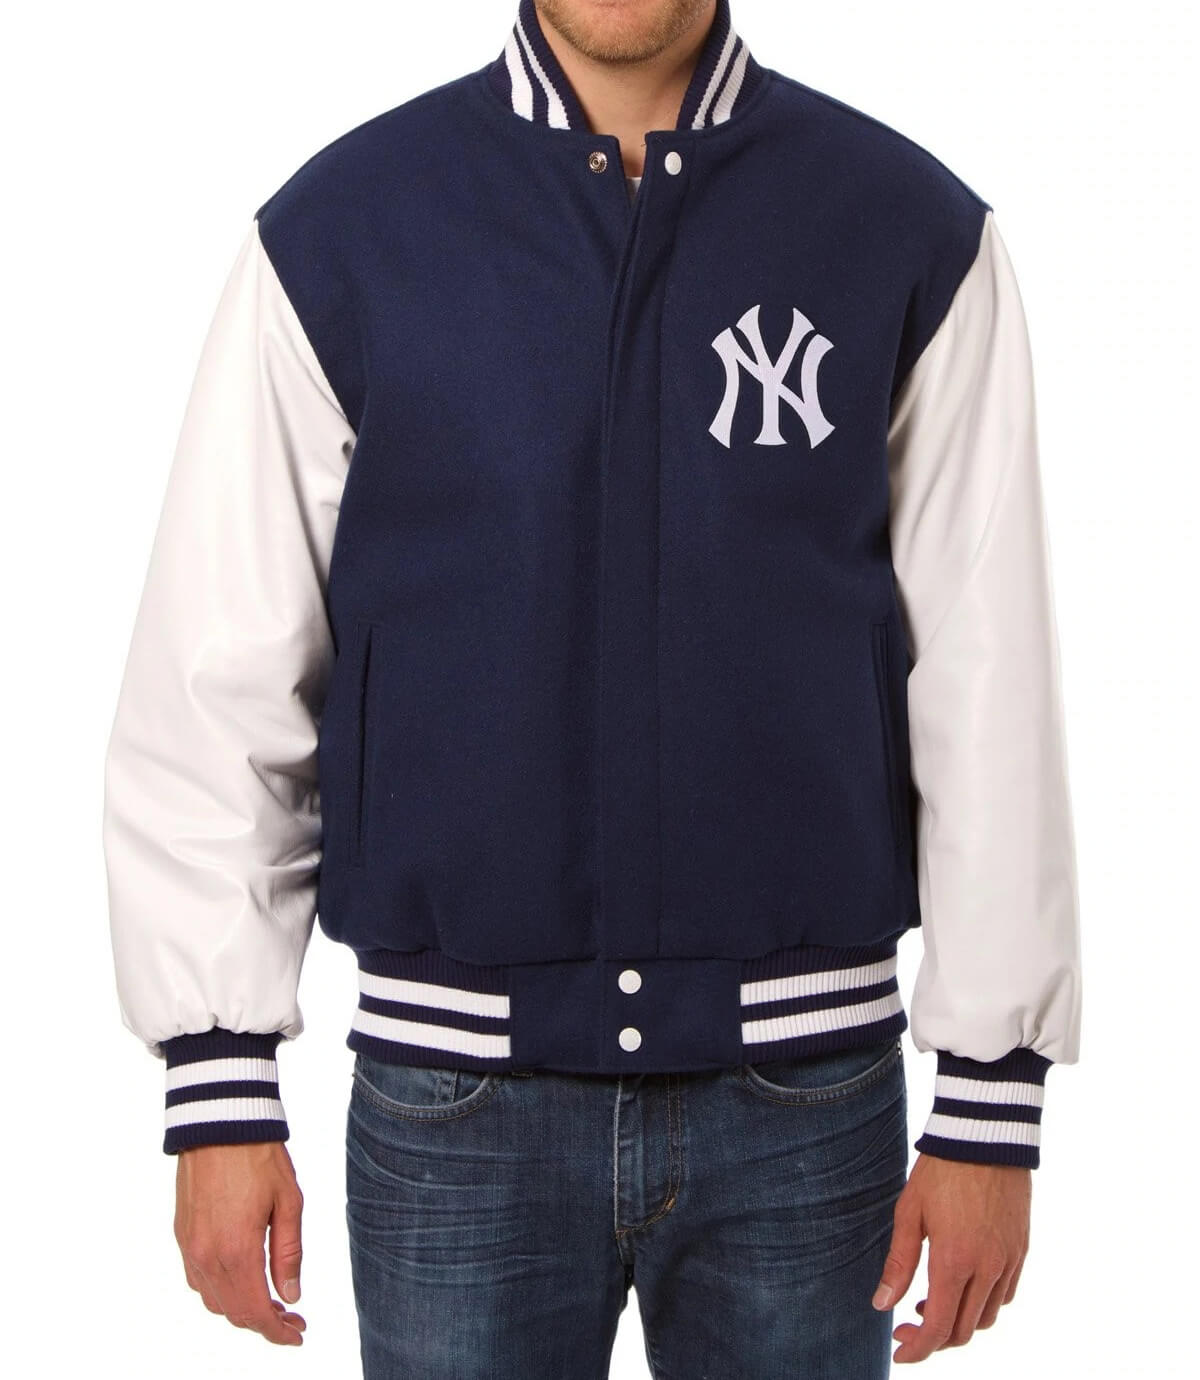 NY Yankees Navy Blue and White Varsity Jacket - Jackets Masters